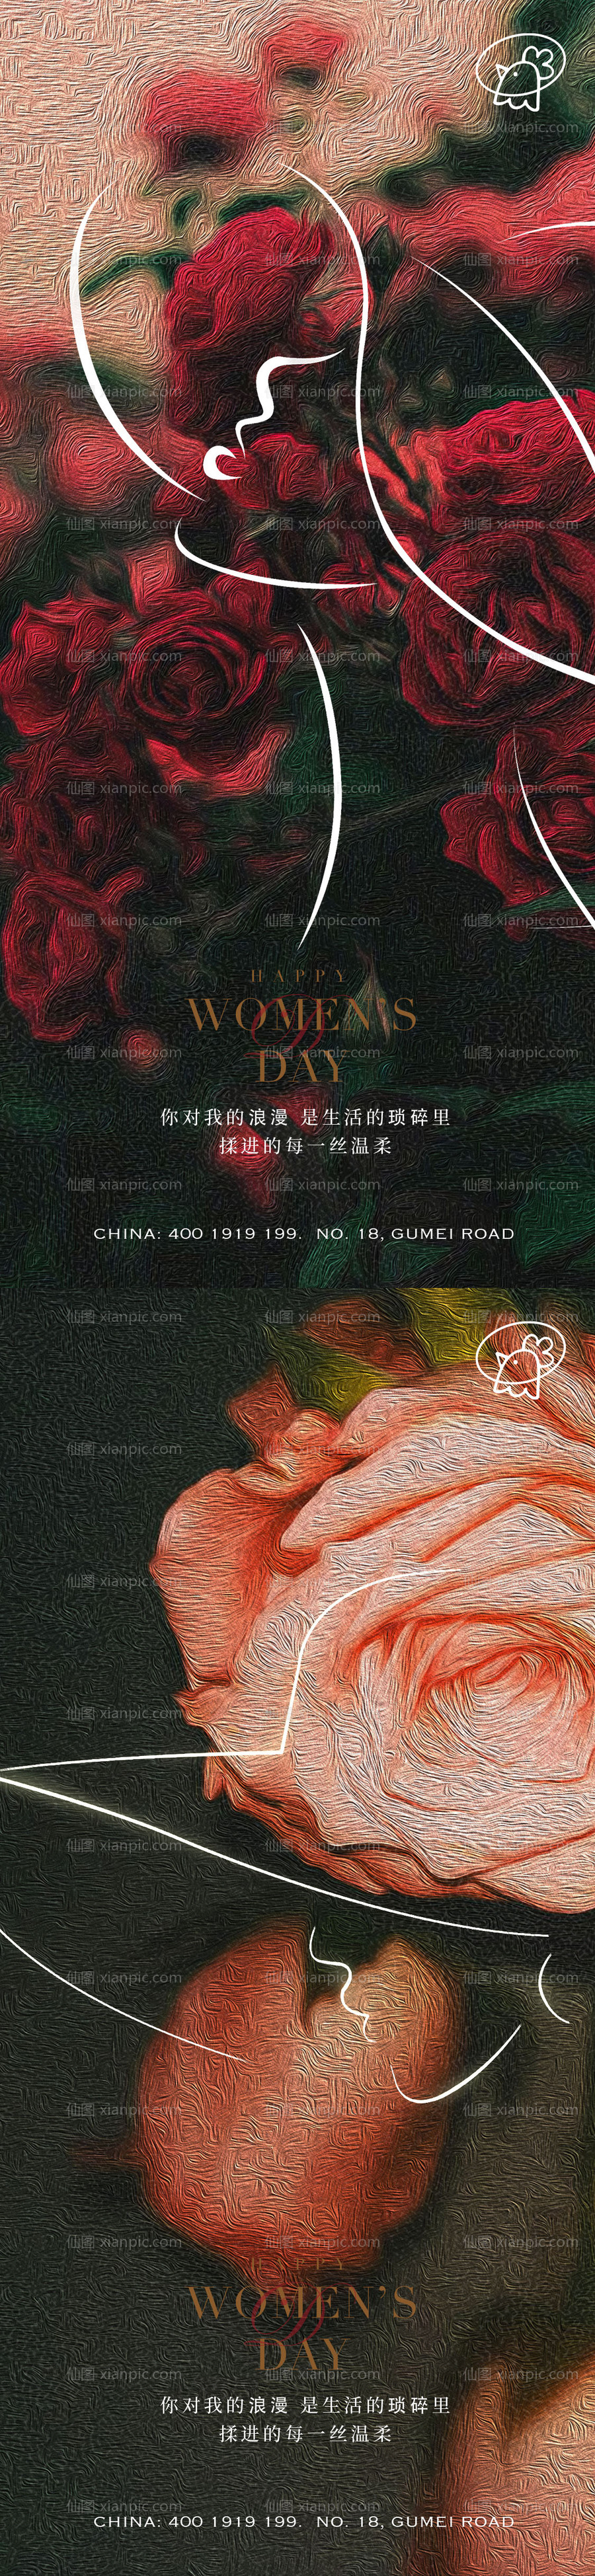 素材乐-38玫瑰女神节海报